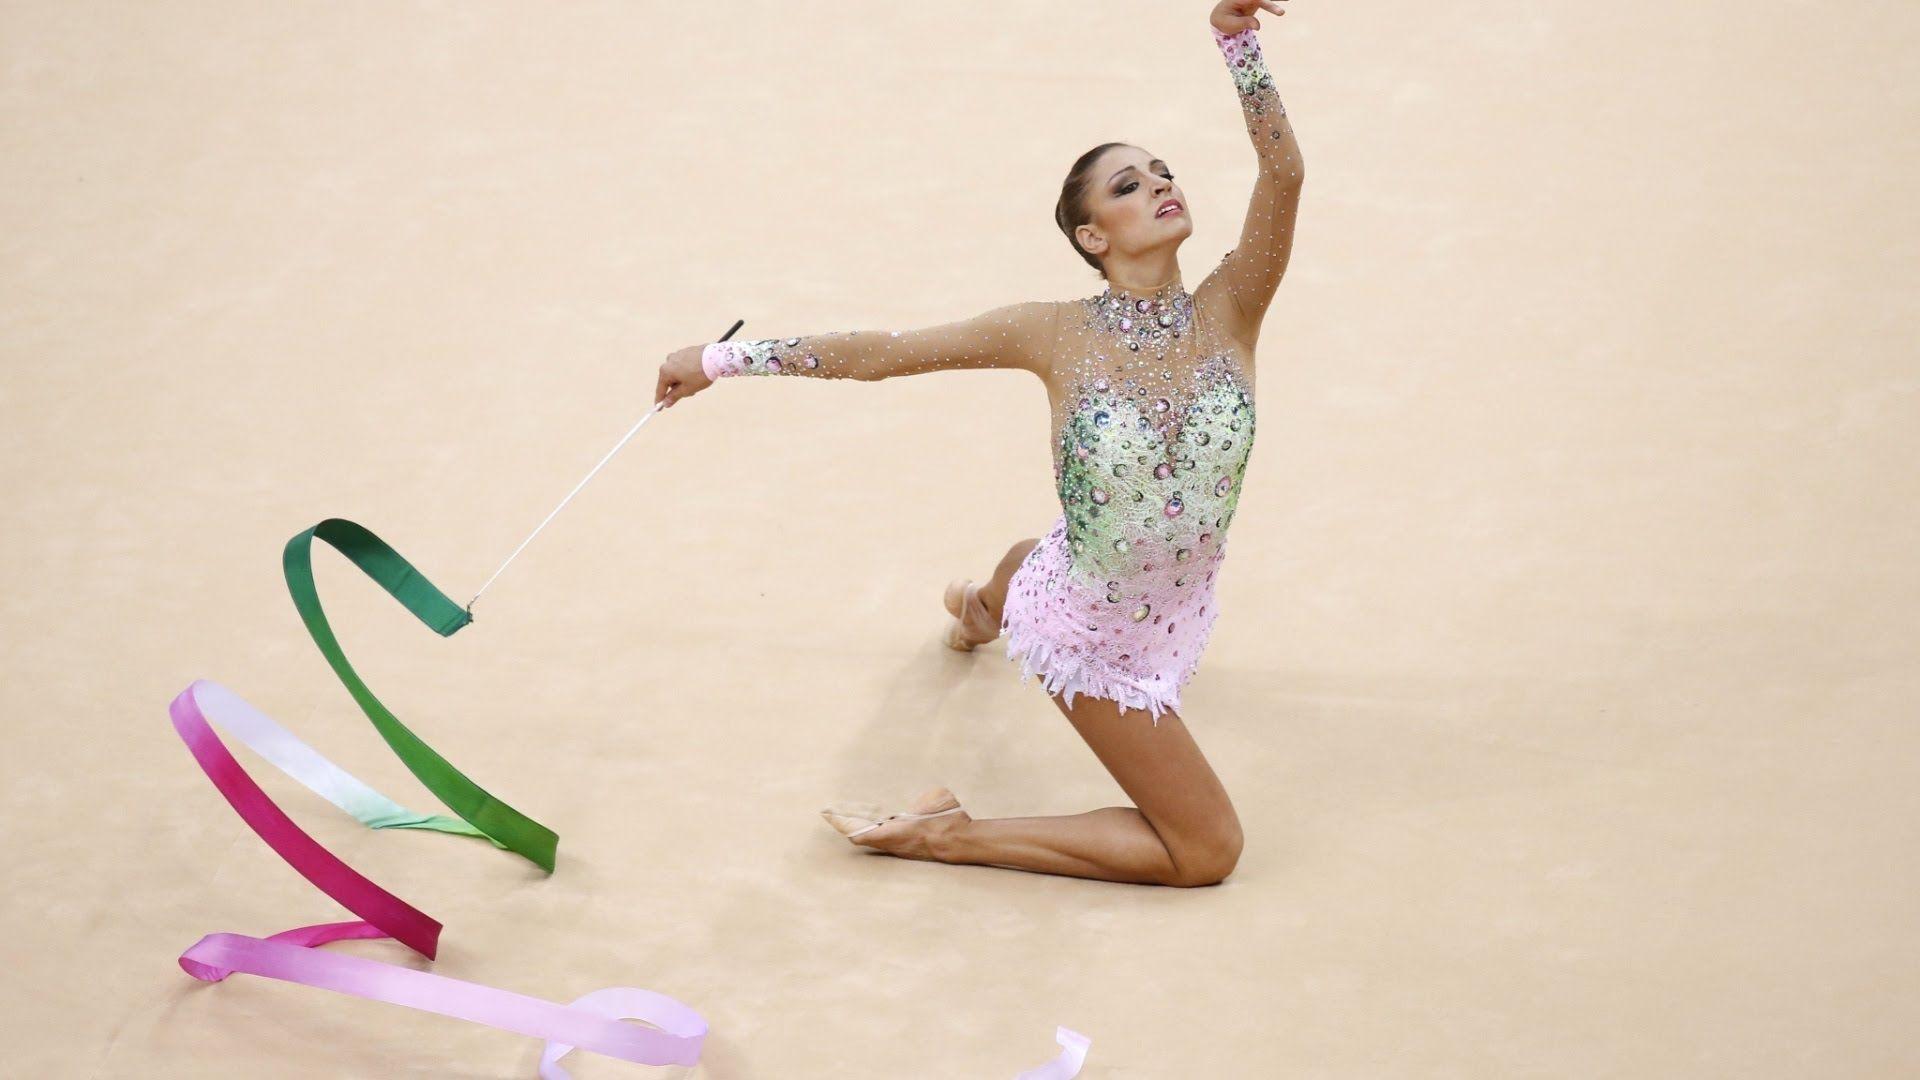 Rio 2016 Rhythmic Gymnastics the Games Begin